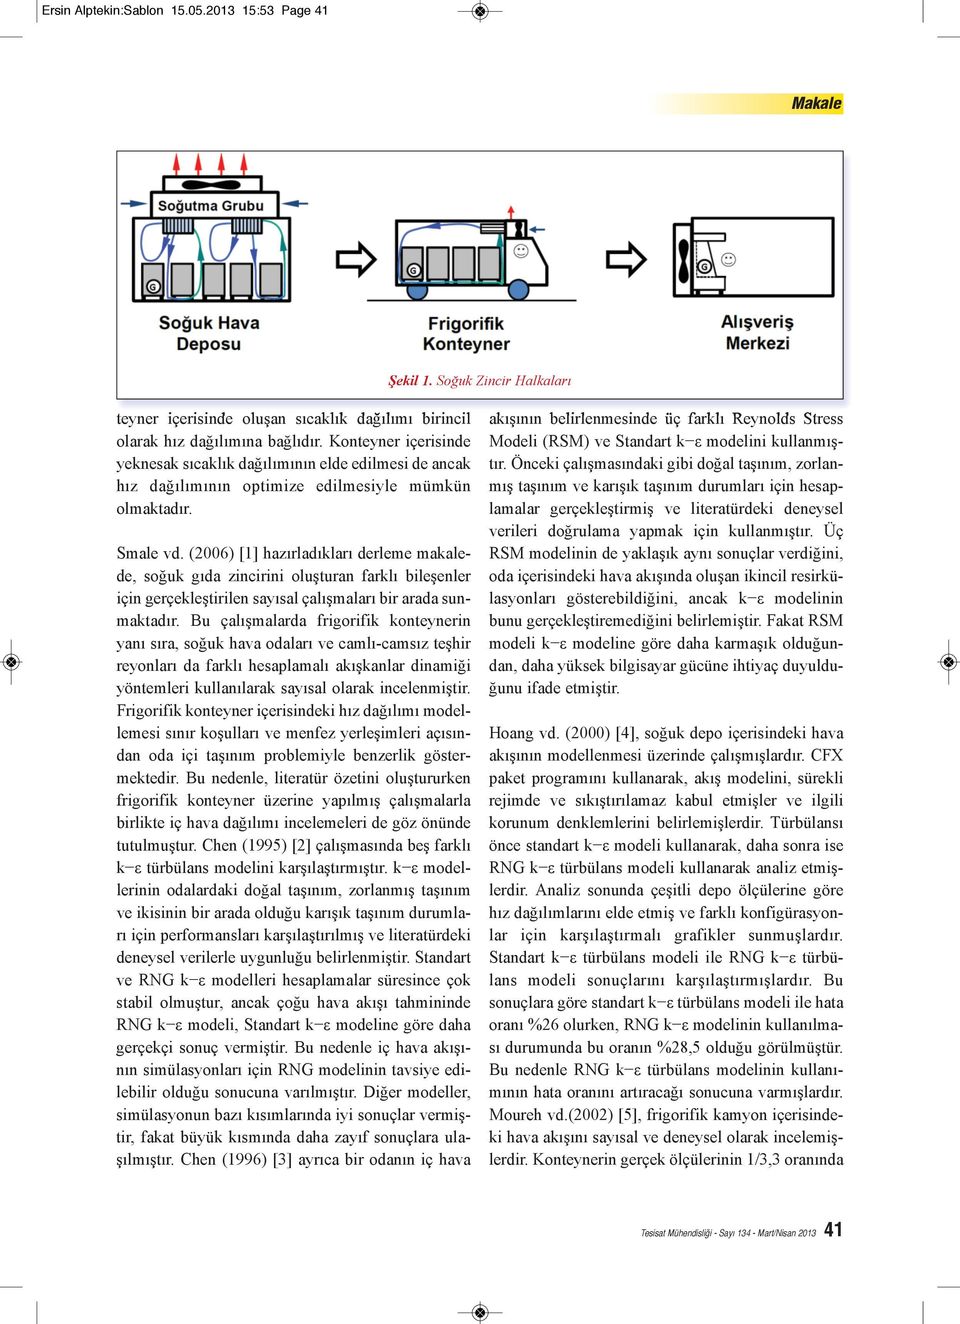 (2006) [1] hazırladıkları derleme makalede, soğuk gıda zincirini oluşturan farklı bileşenler için gerçekleştirilen sayısal çalışmaları bir arada sunmaktadır.